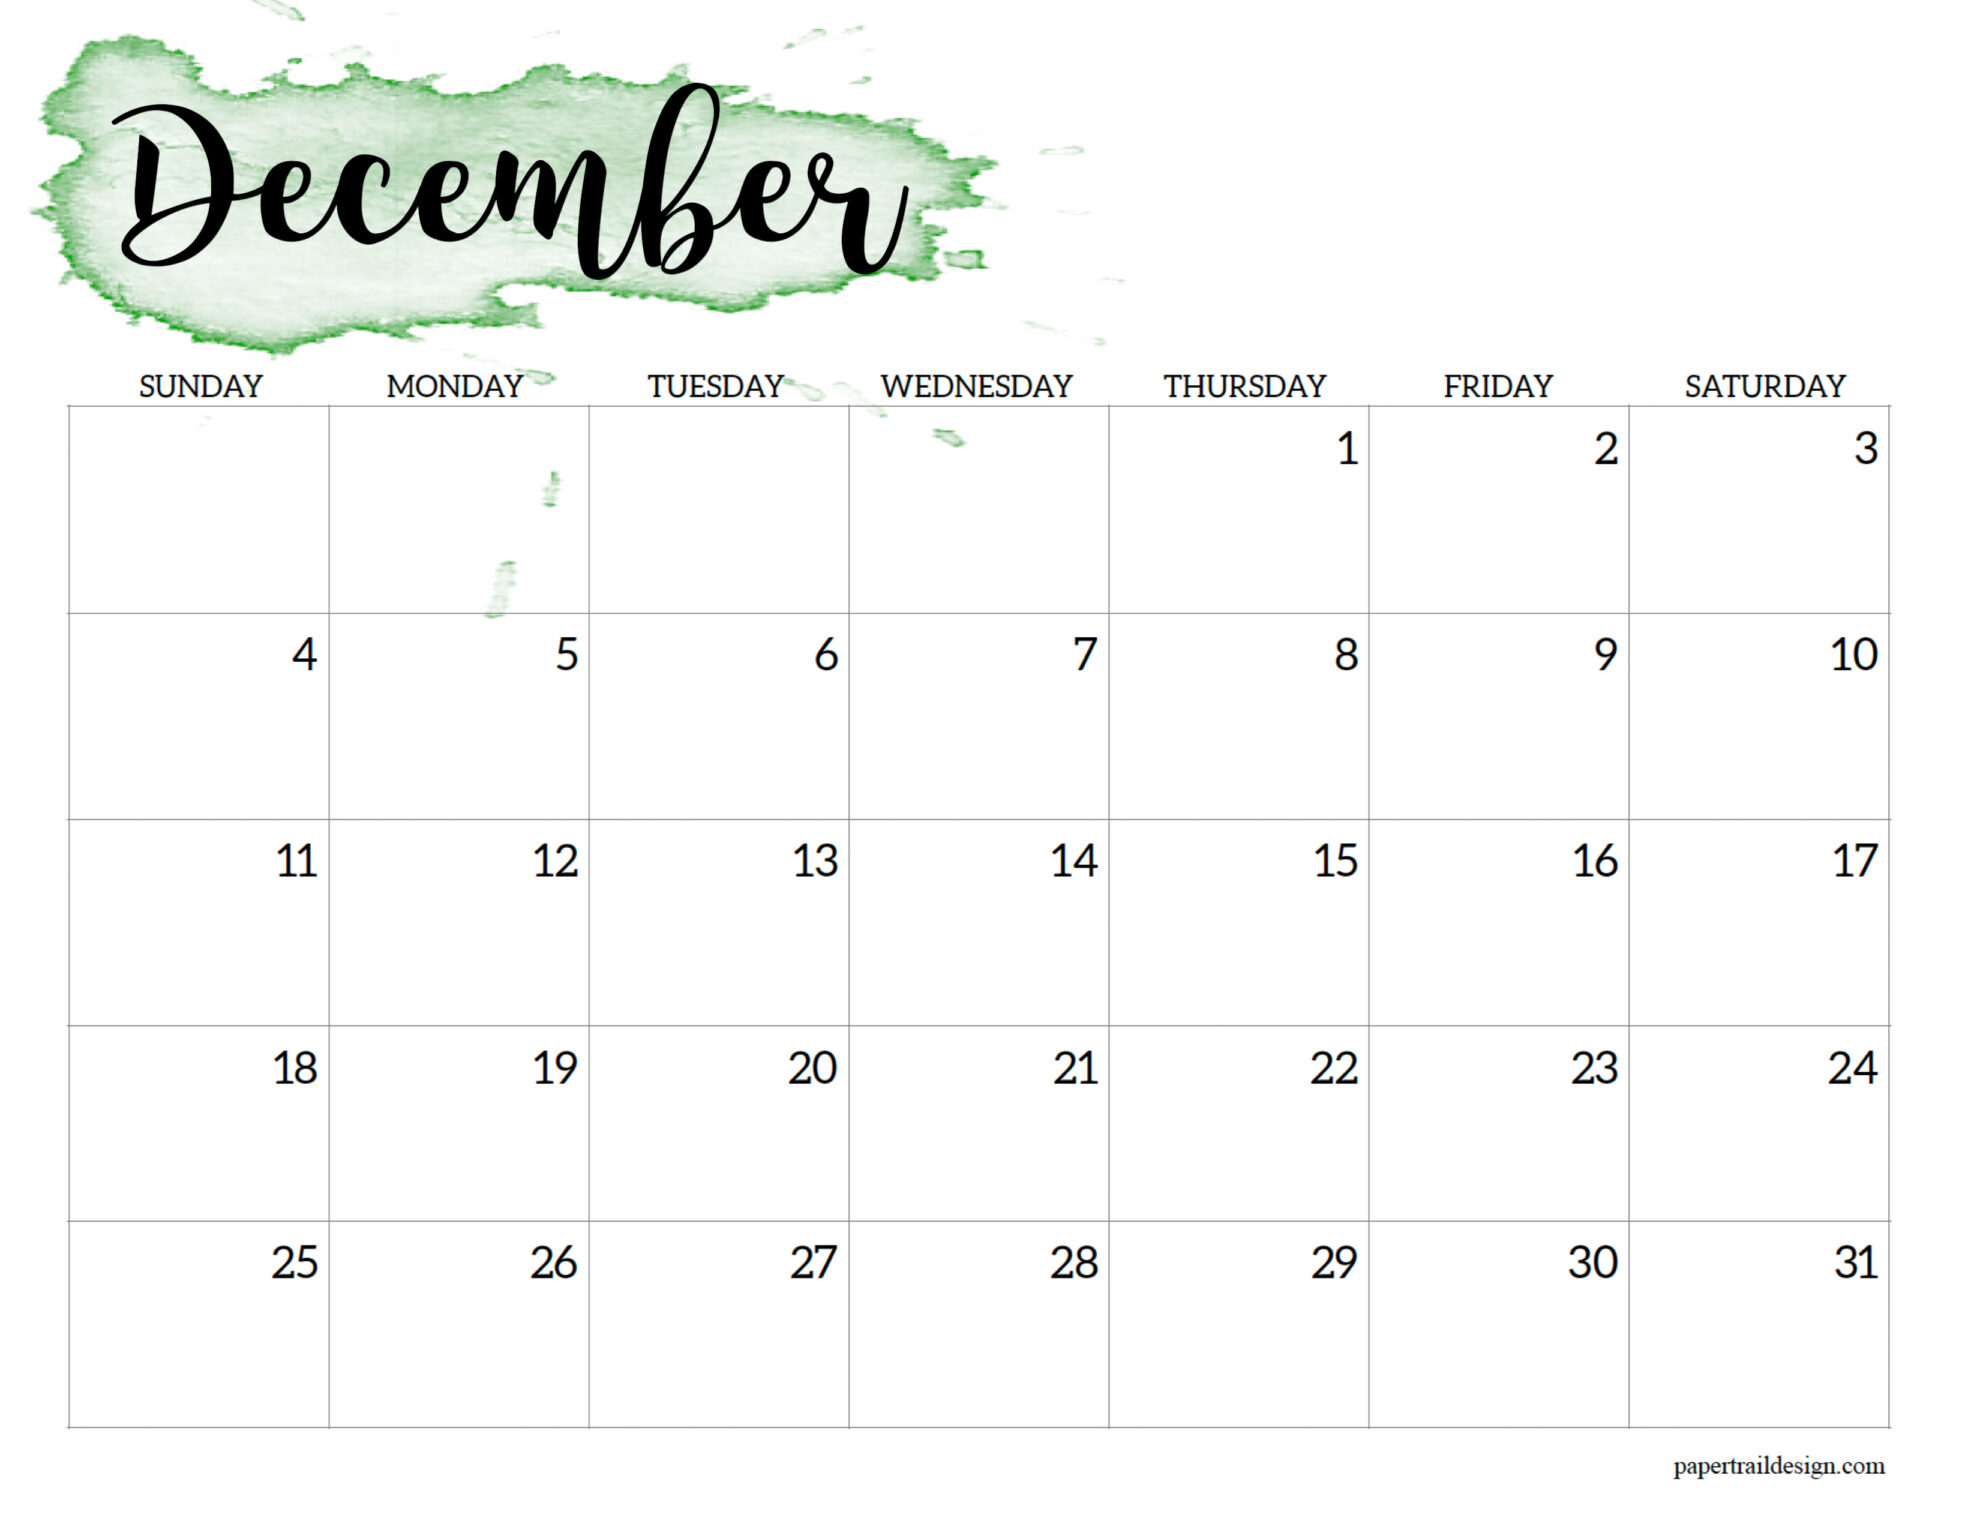 December 2022 Calendar Printable 2022 Calendar Printable - Watercolor - Paper Trail Design